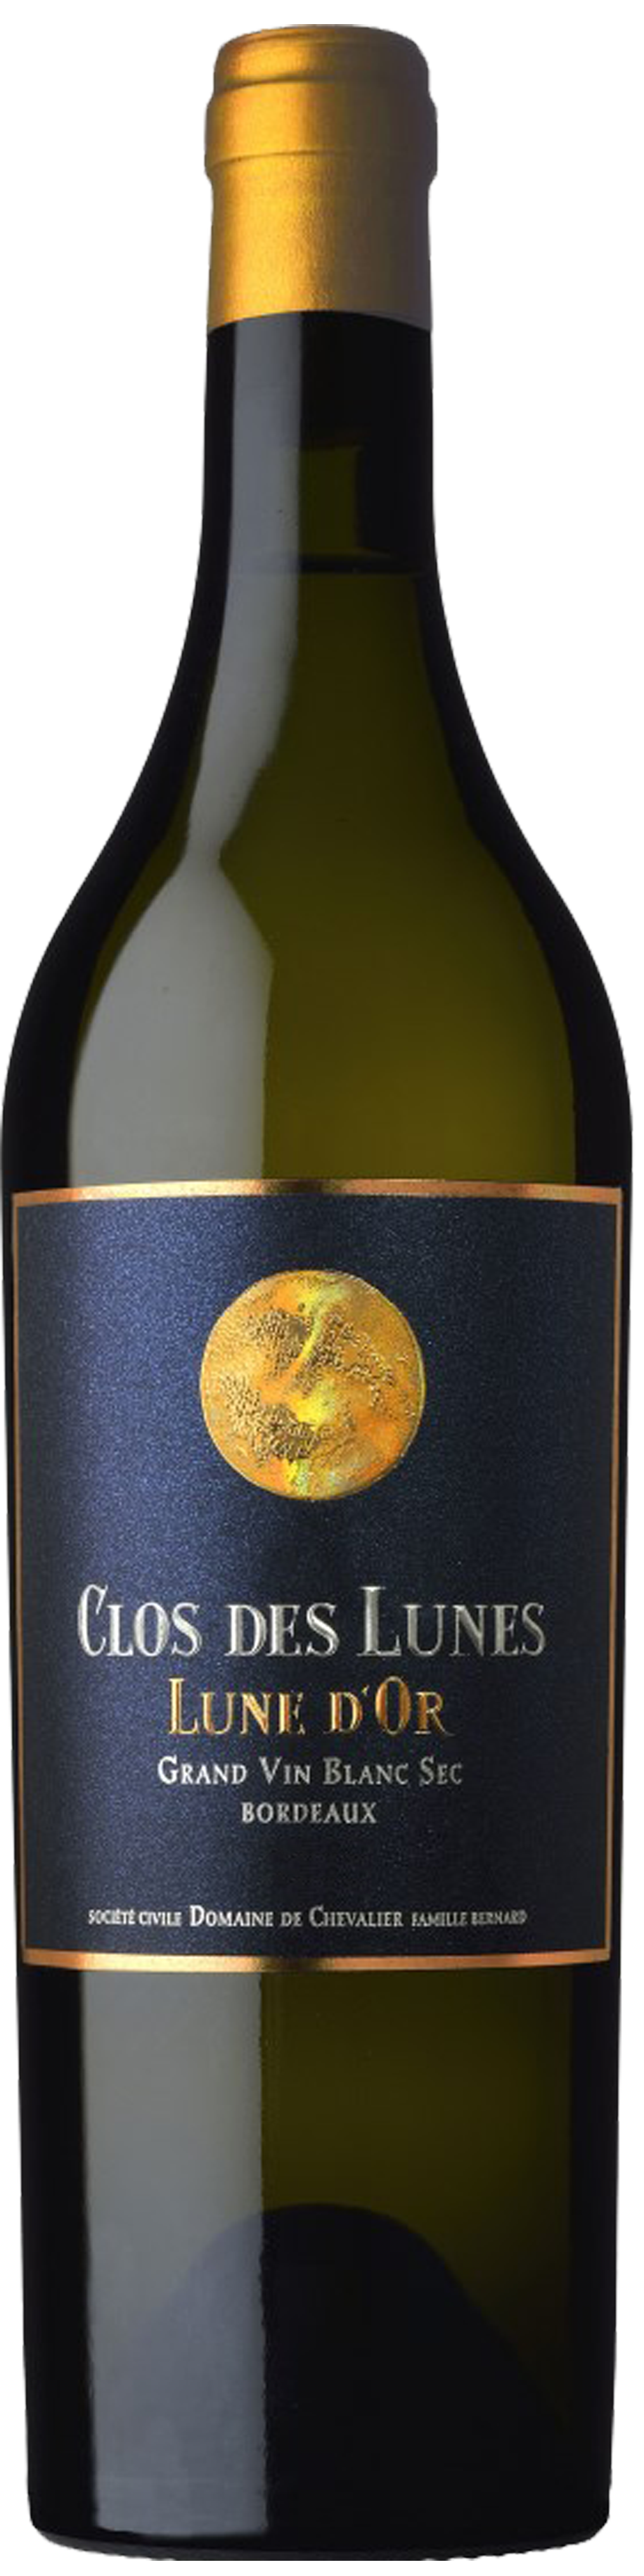 Bottle shot of 2012 Clos des Lunes Cuvée Lune d'Or